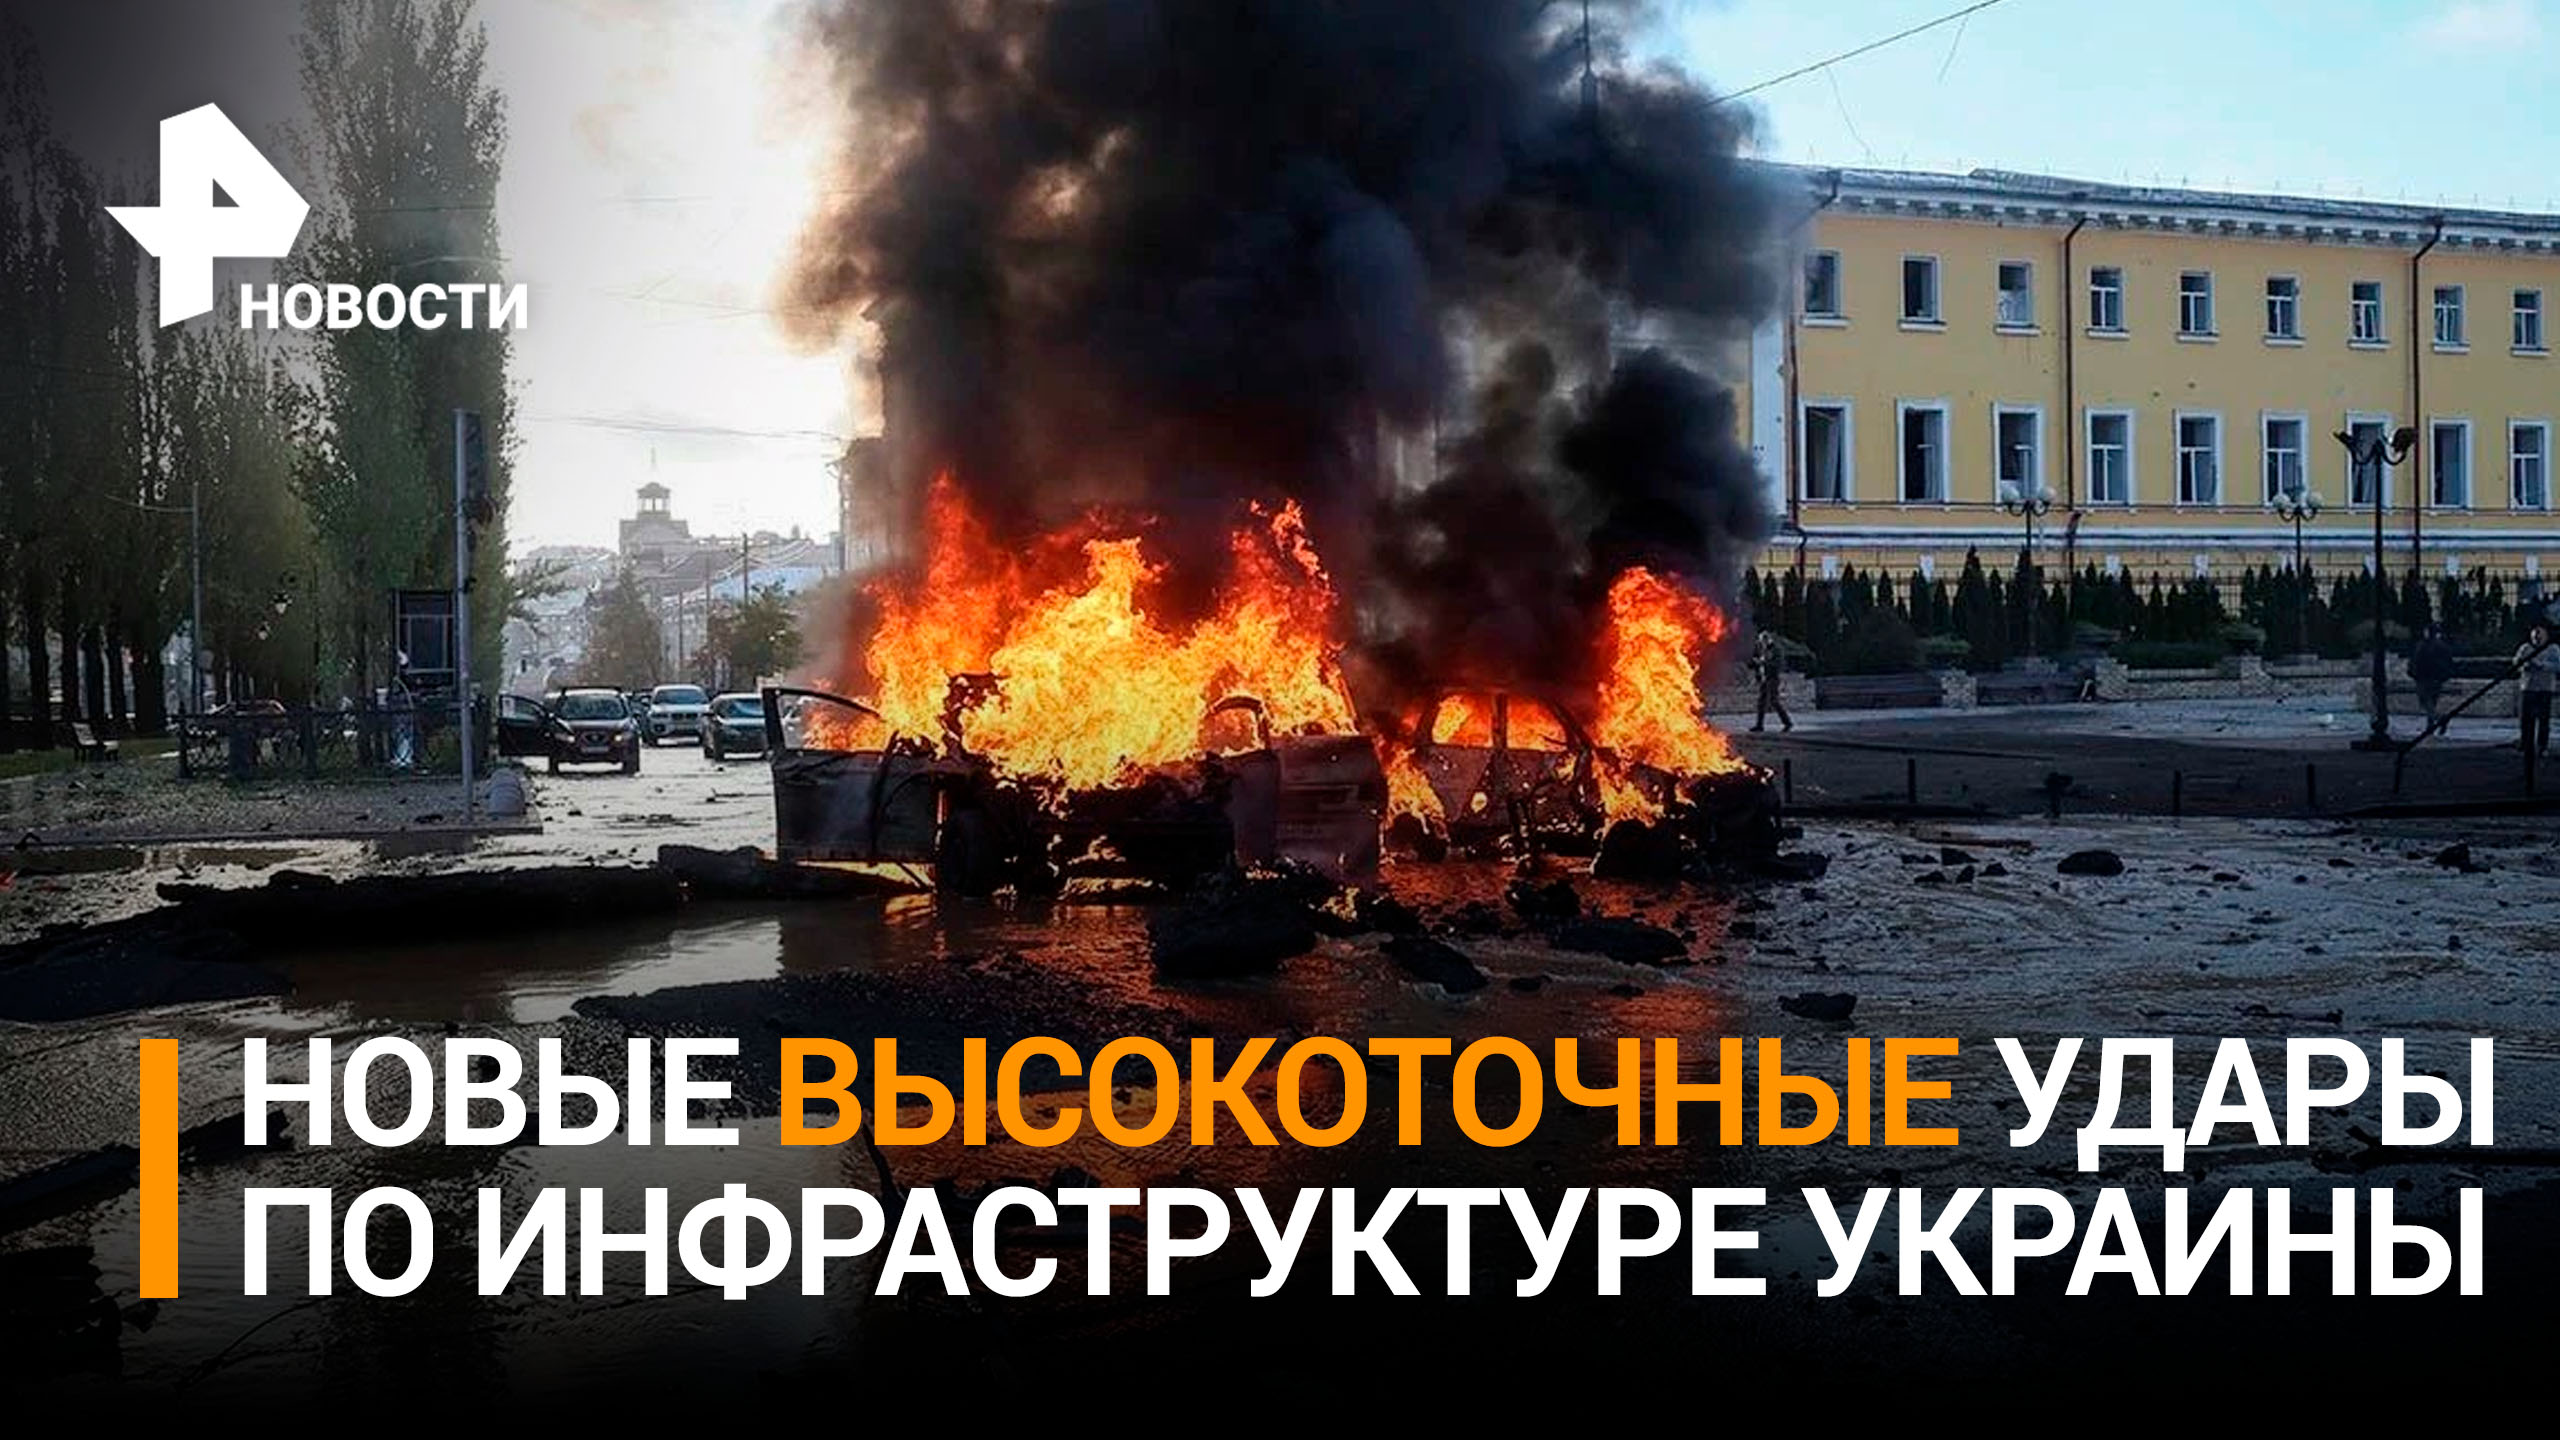 Новые массированные удары по инфраструктуре Украины. Главное / РЕН Новости